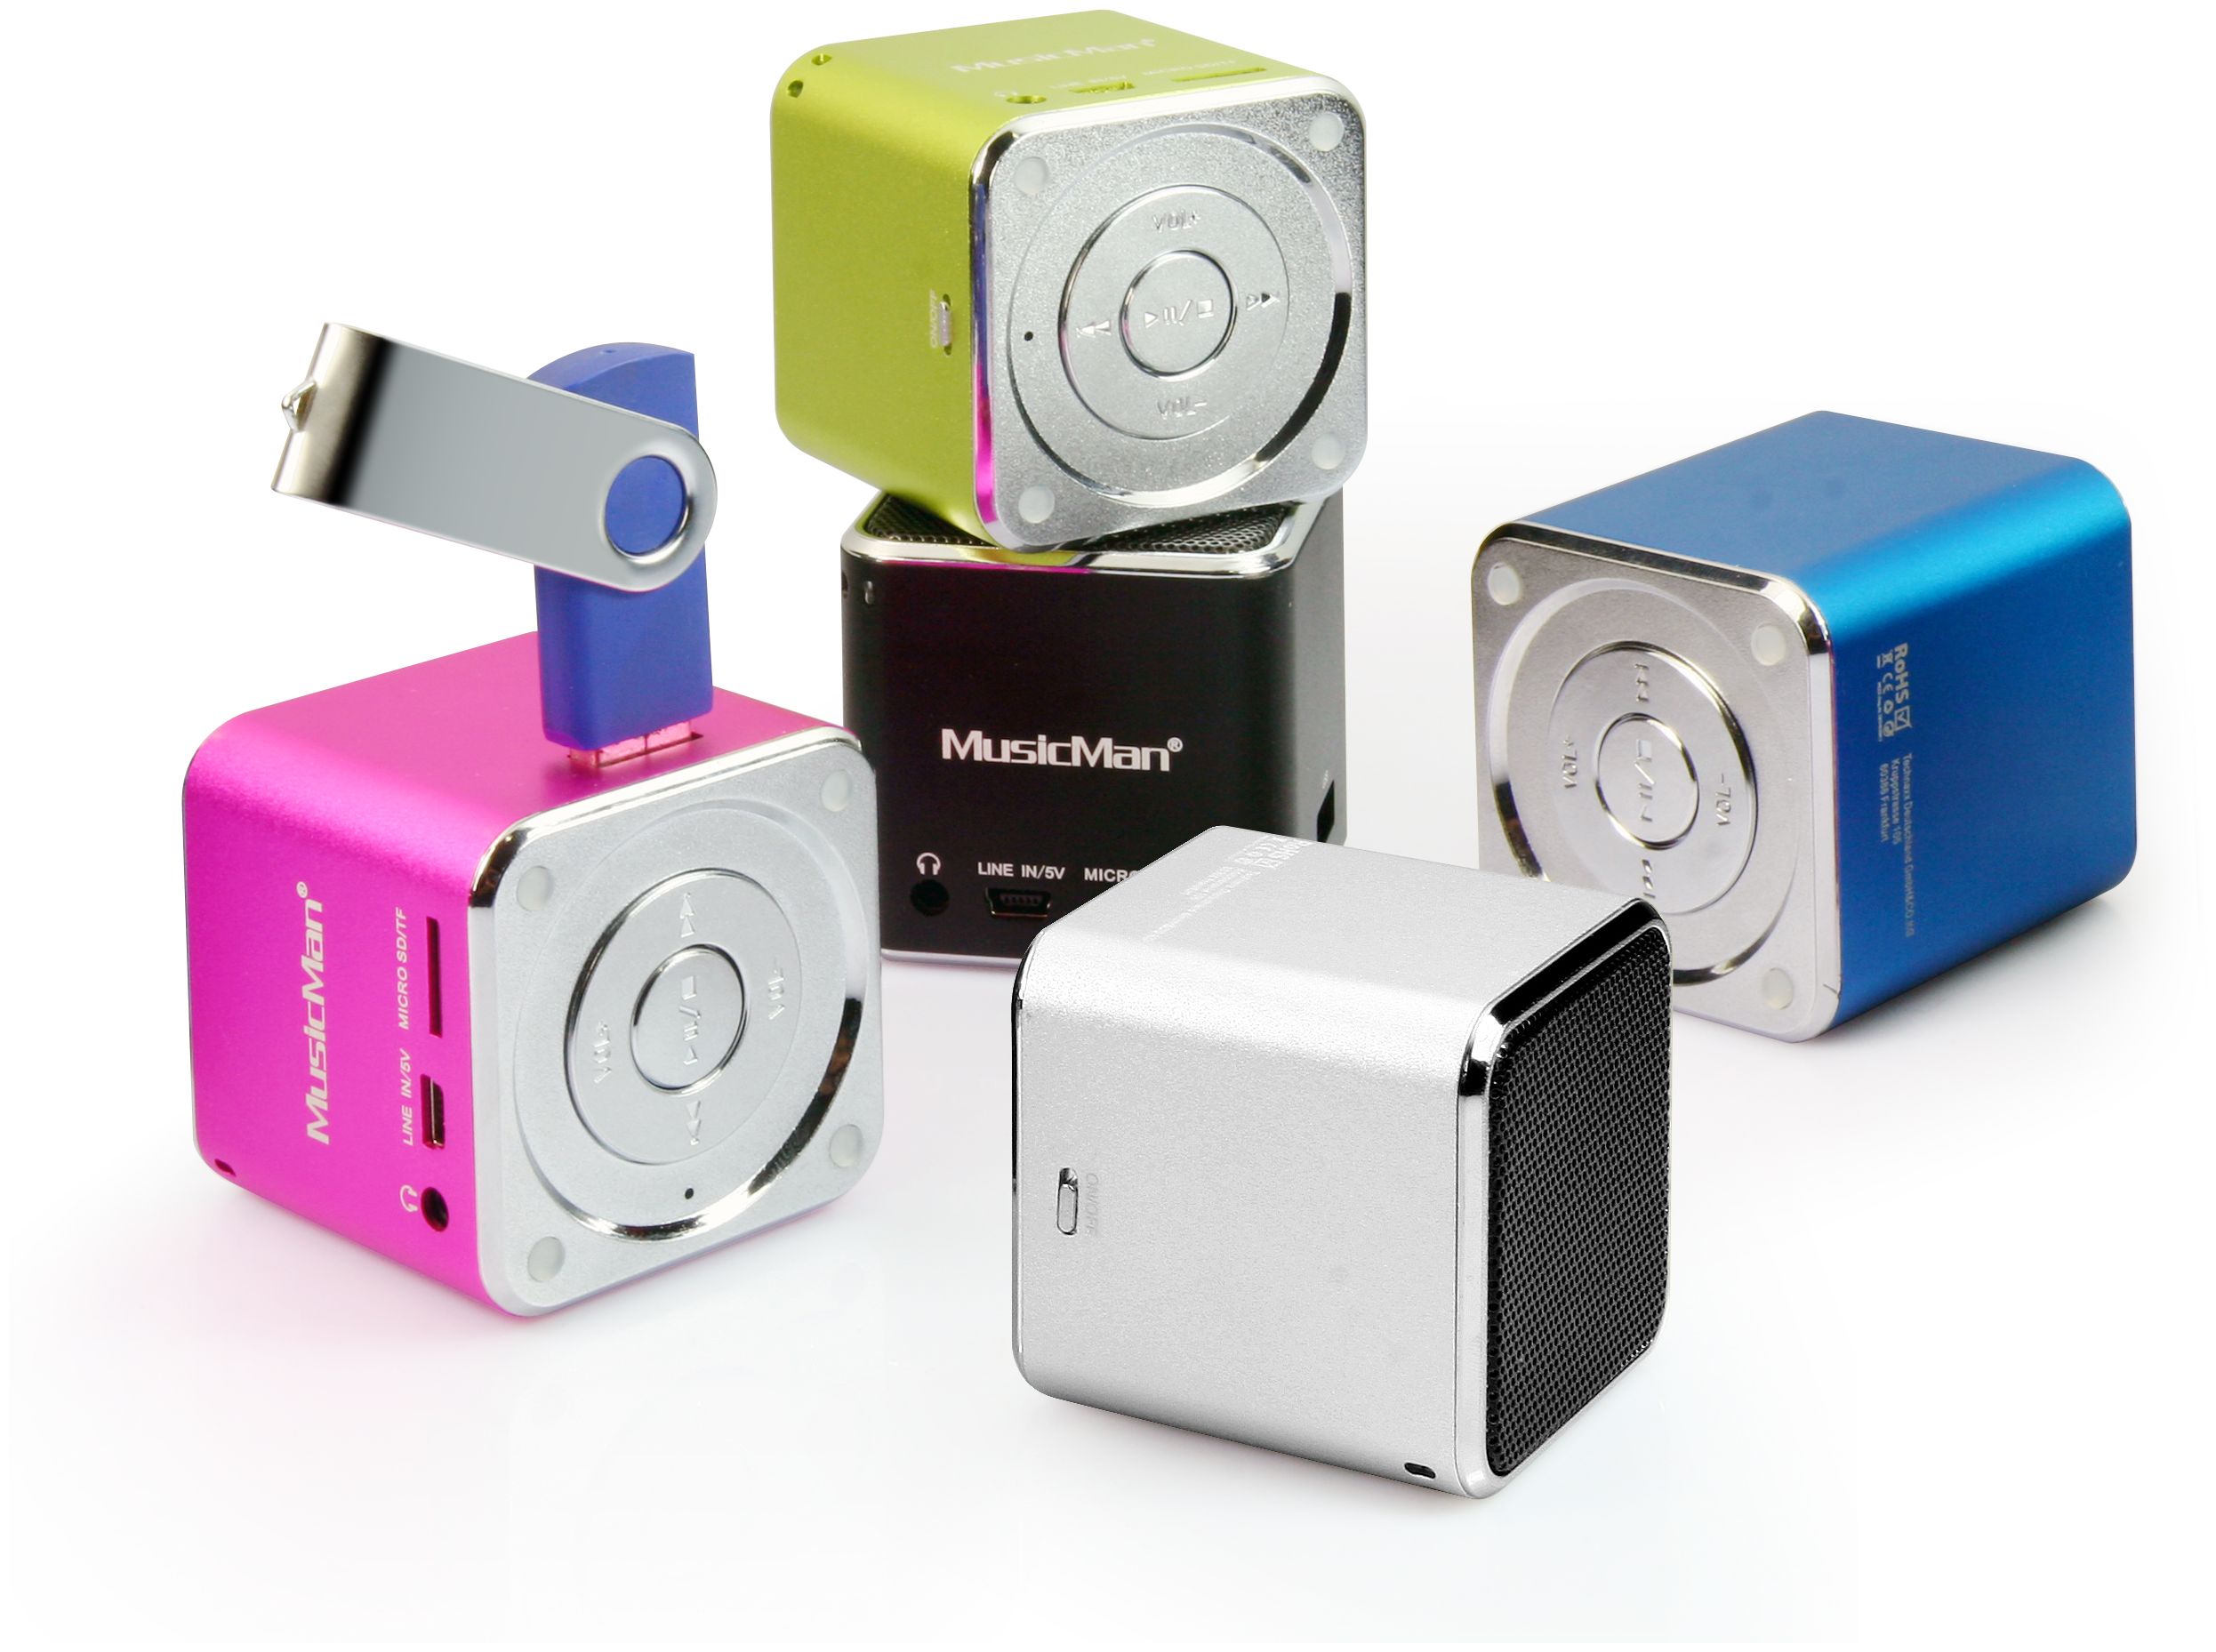 Technaxx Mini MusicMan portabler expert von Lautsprecher (Pink) Technomarkt